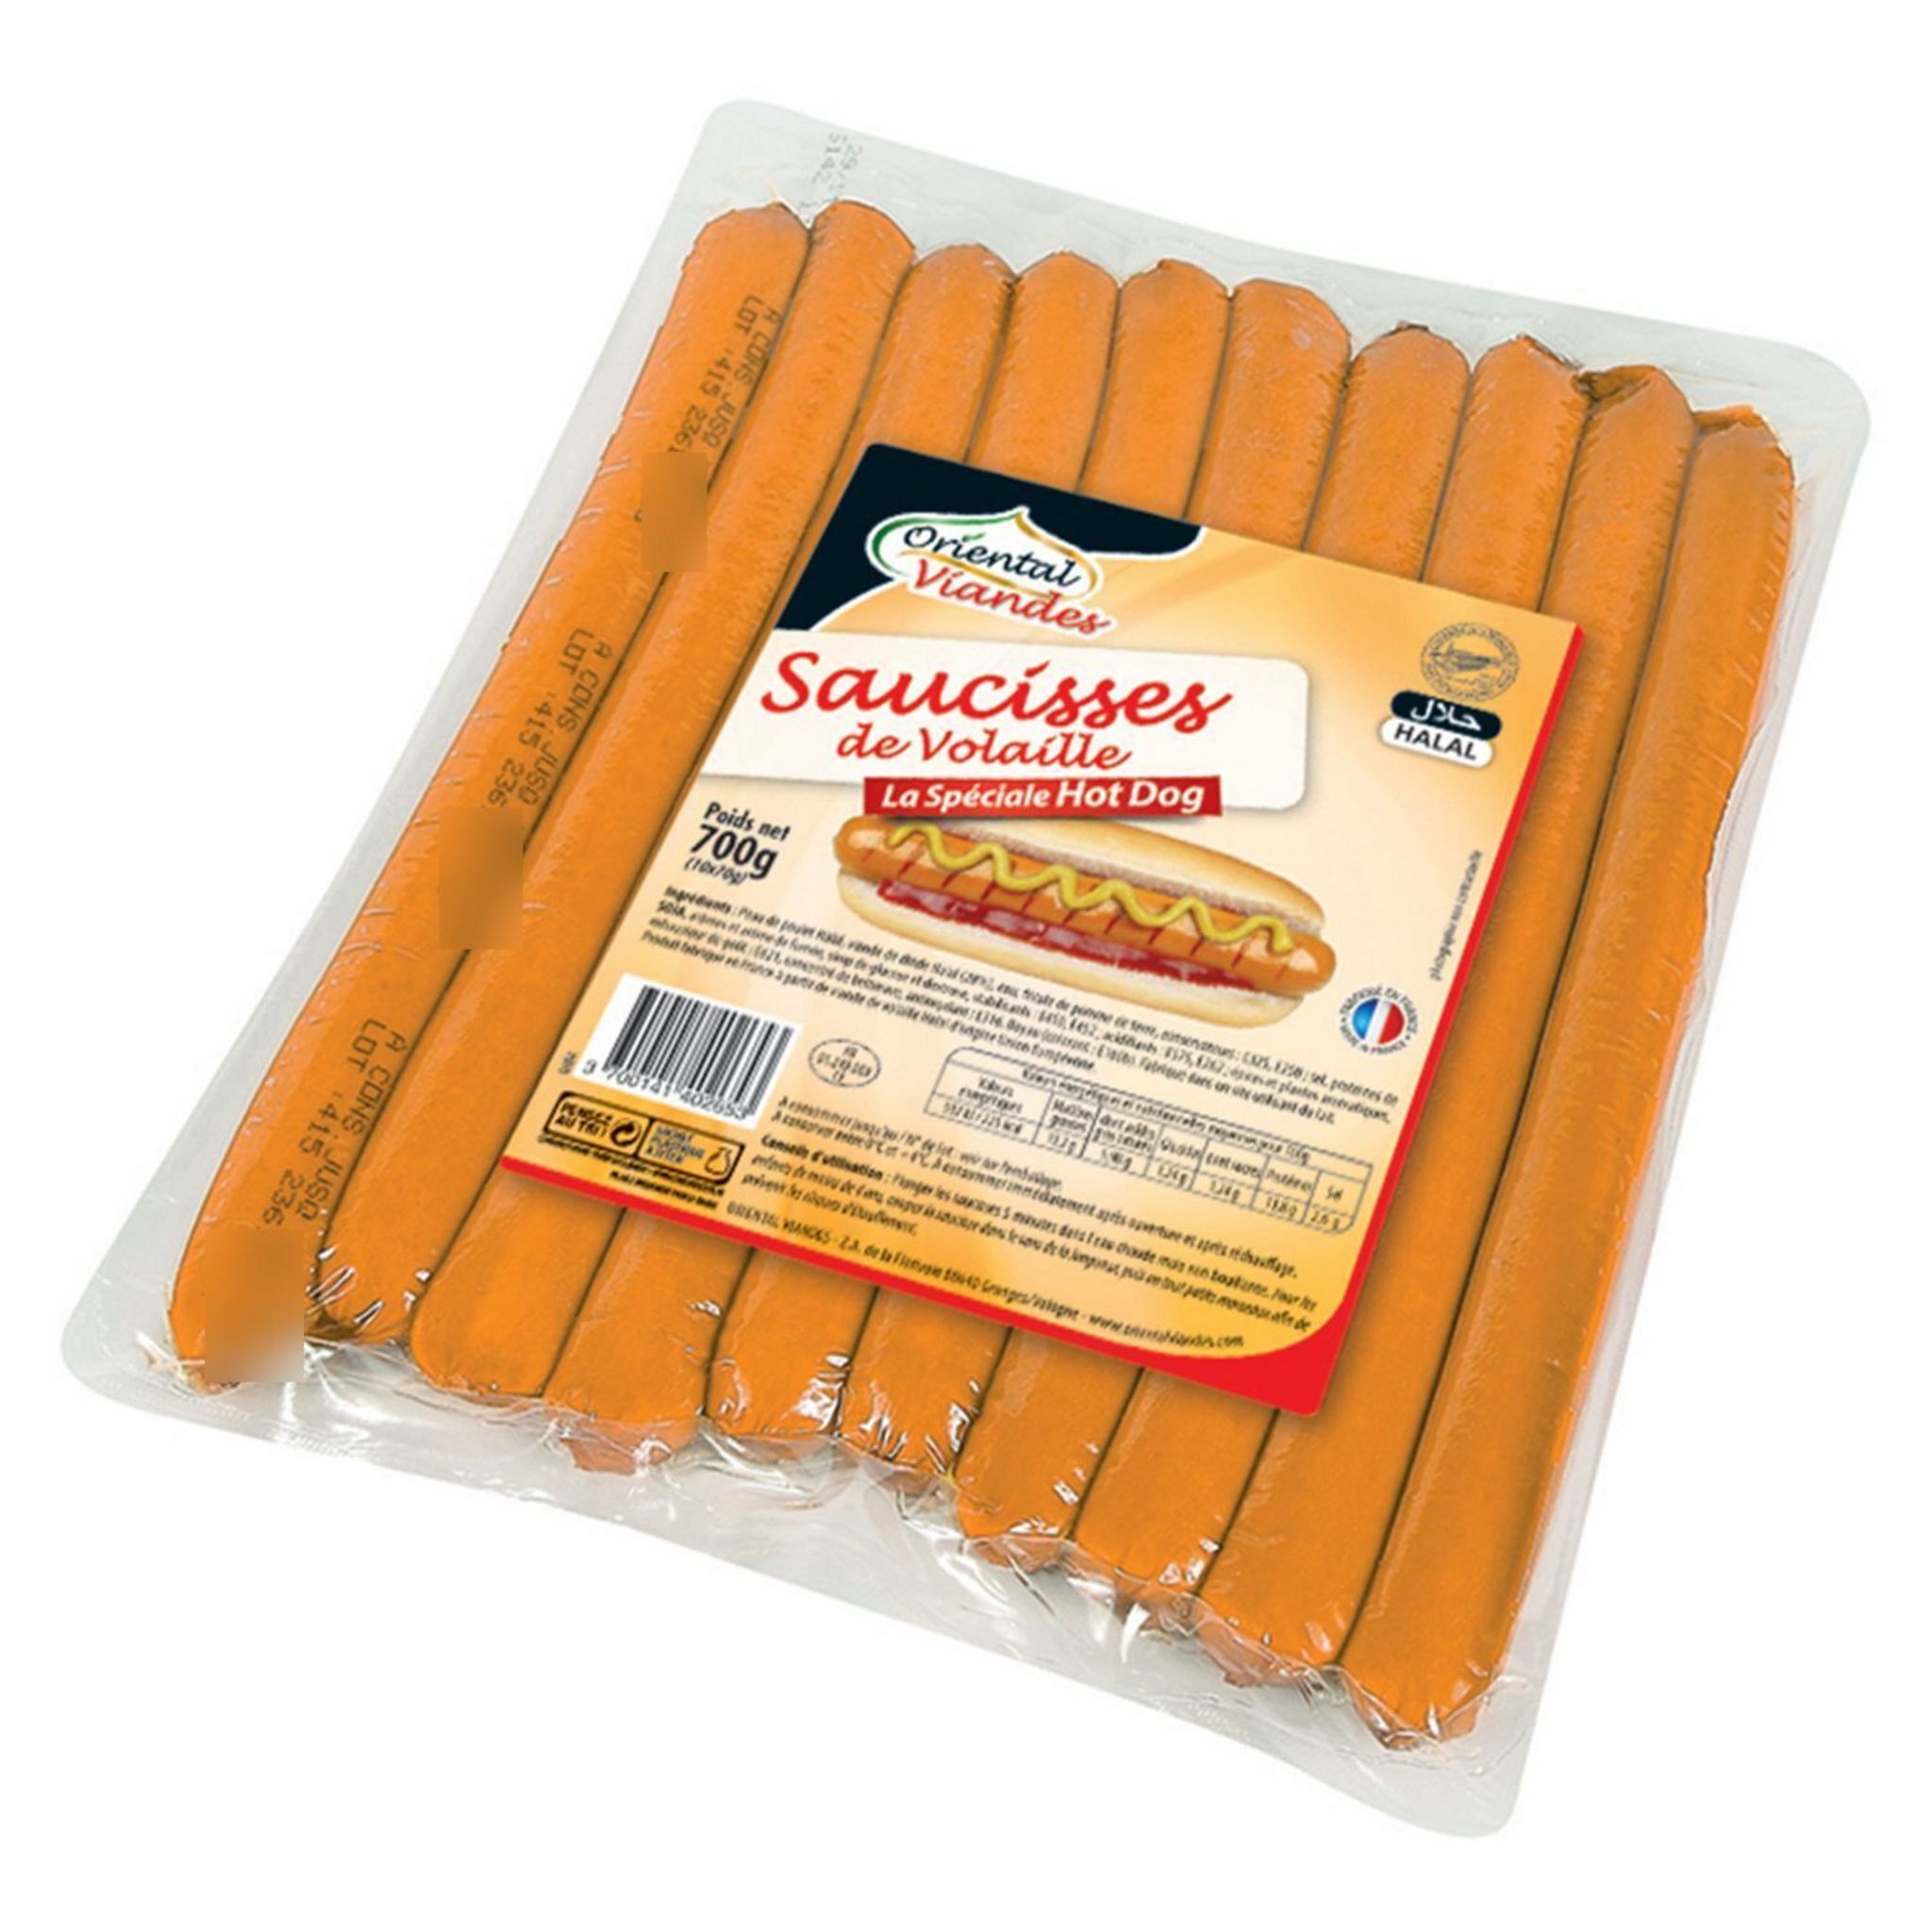 ORIENTAL VIANDES Saucisses de volaille spécial hot dog 700g pas